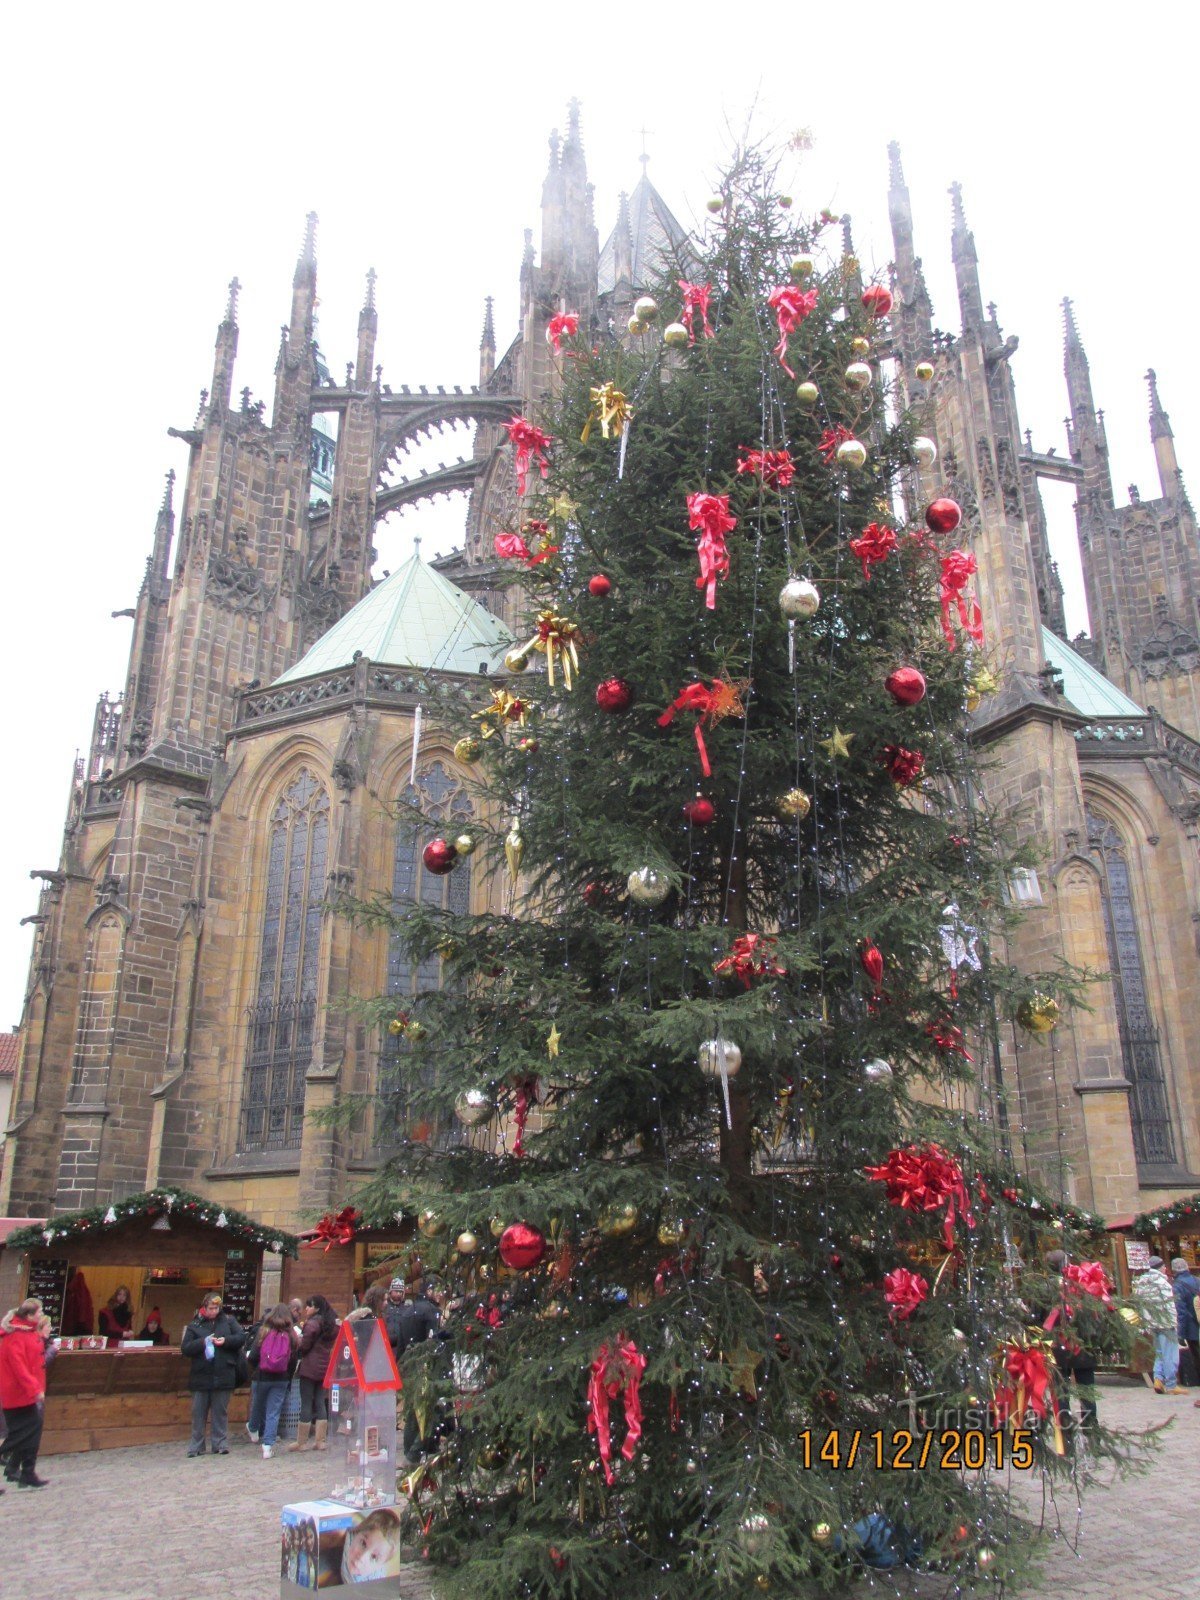 Piețele de Crăciun la Castelul Praga